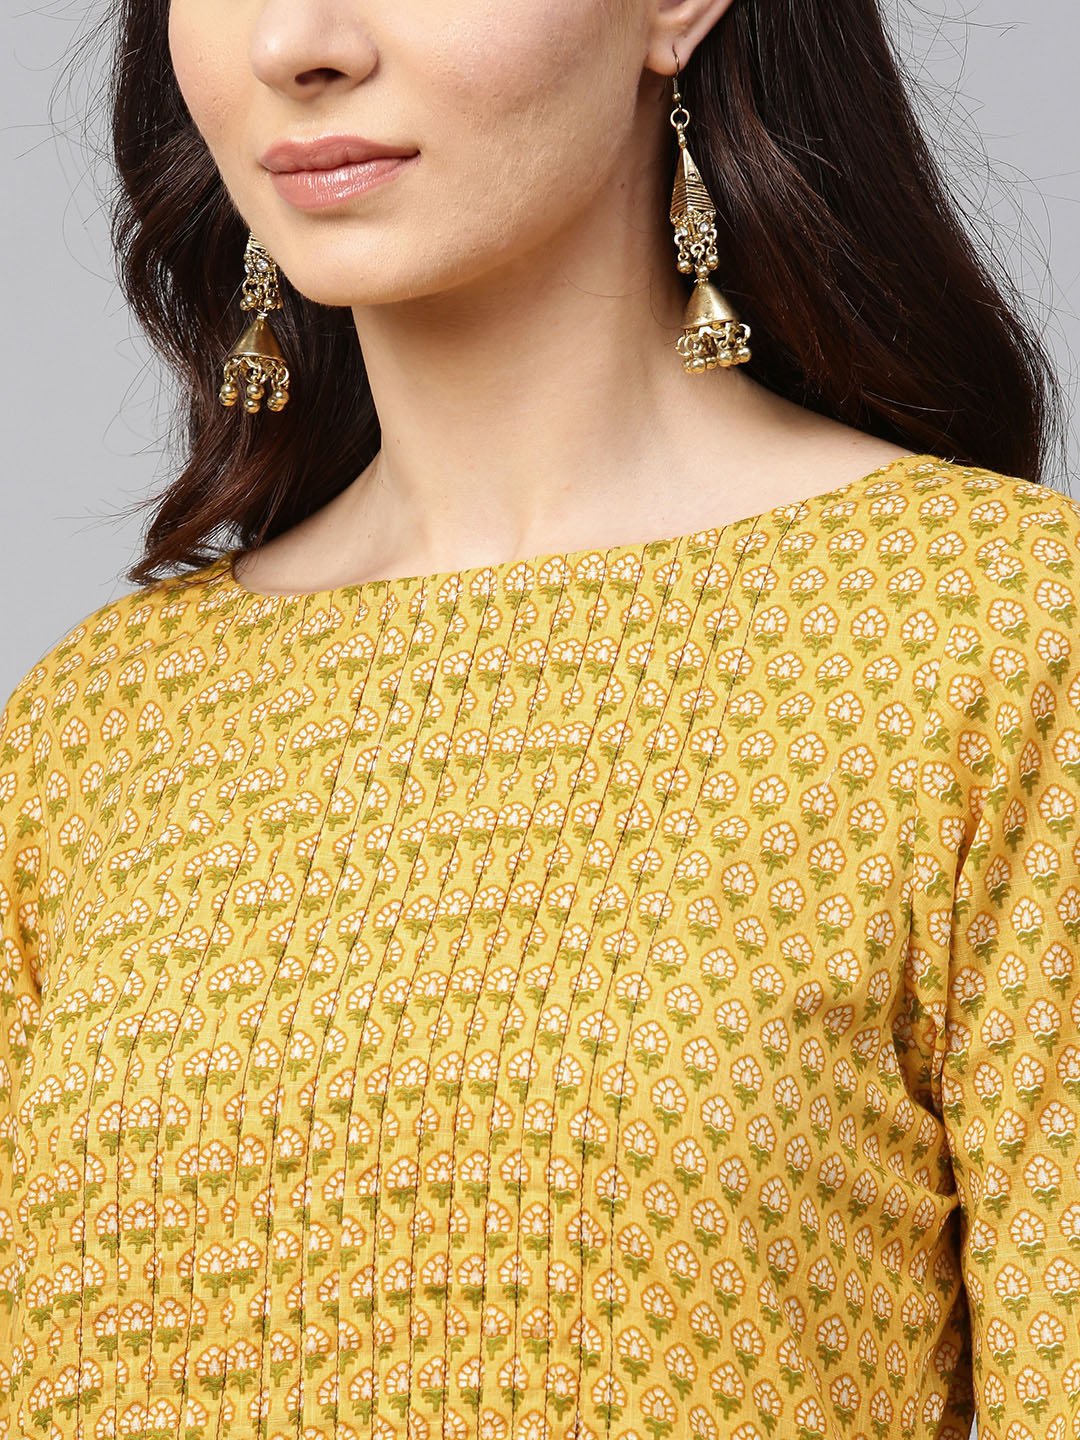 Women's Yellow Printed Half Sleeve Cotton Straight Kurta - Nayo Clothing